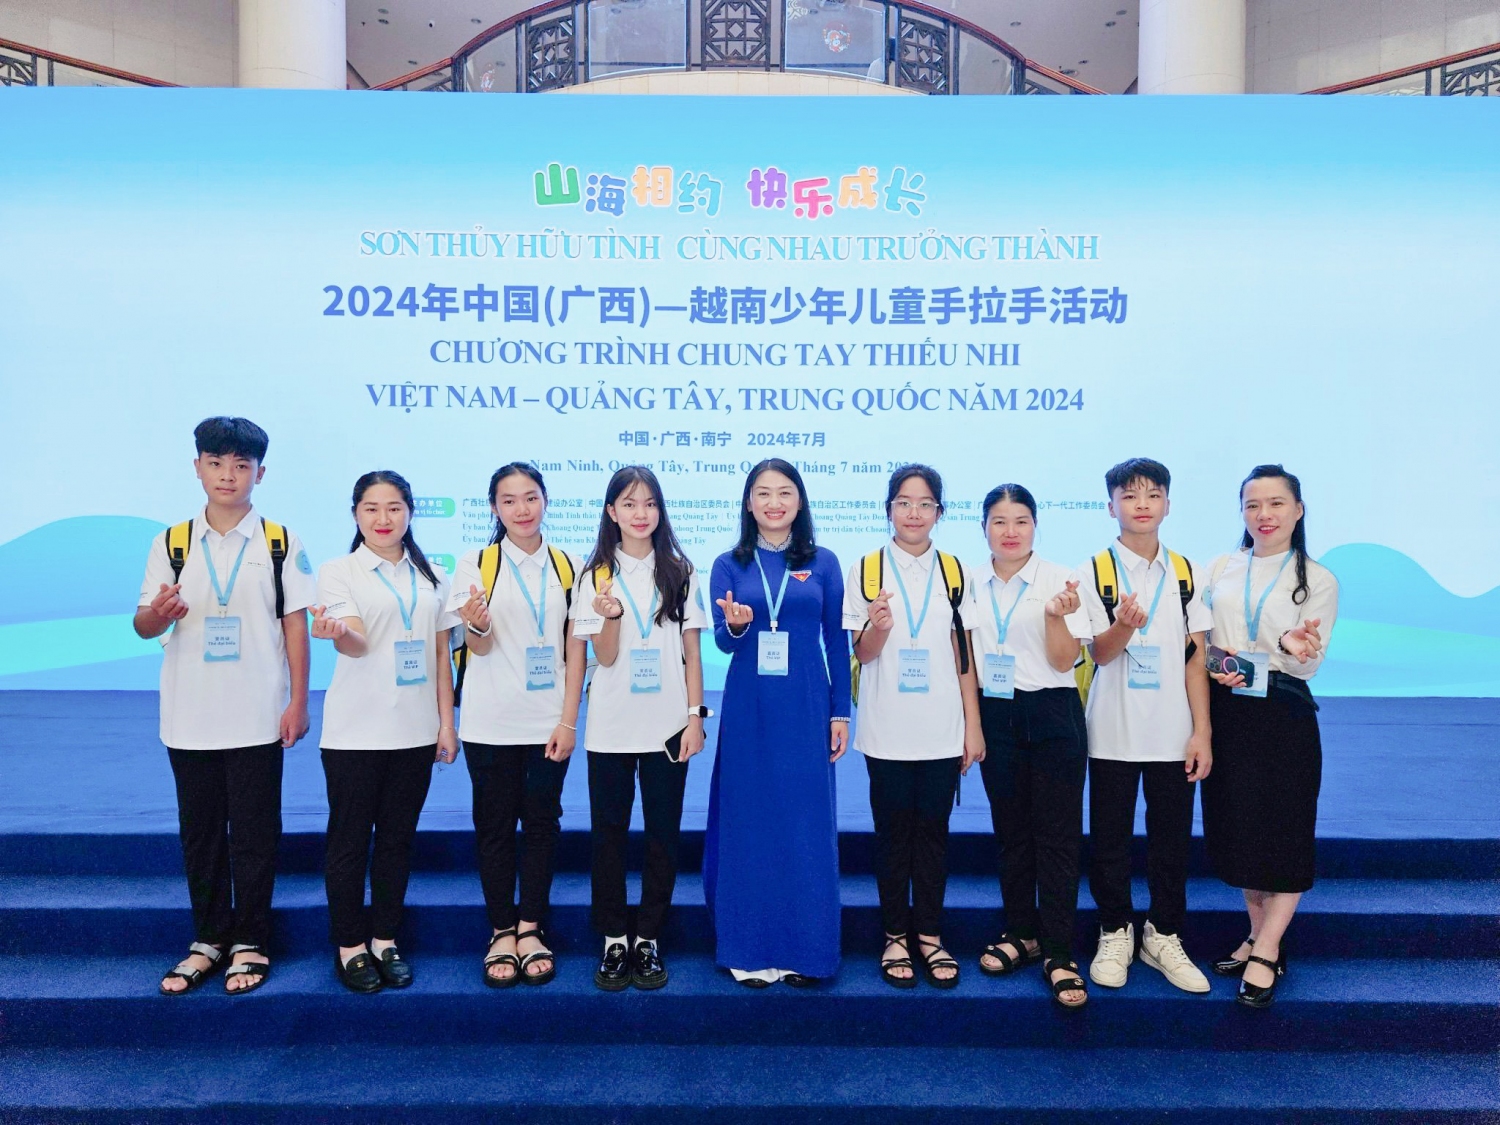 Đoàn đại biểu dự Lễ khởi động Chương trình Chung tay thiếu nhi Việt Nam   Quảng Tây, Trung Quốc năm 2024